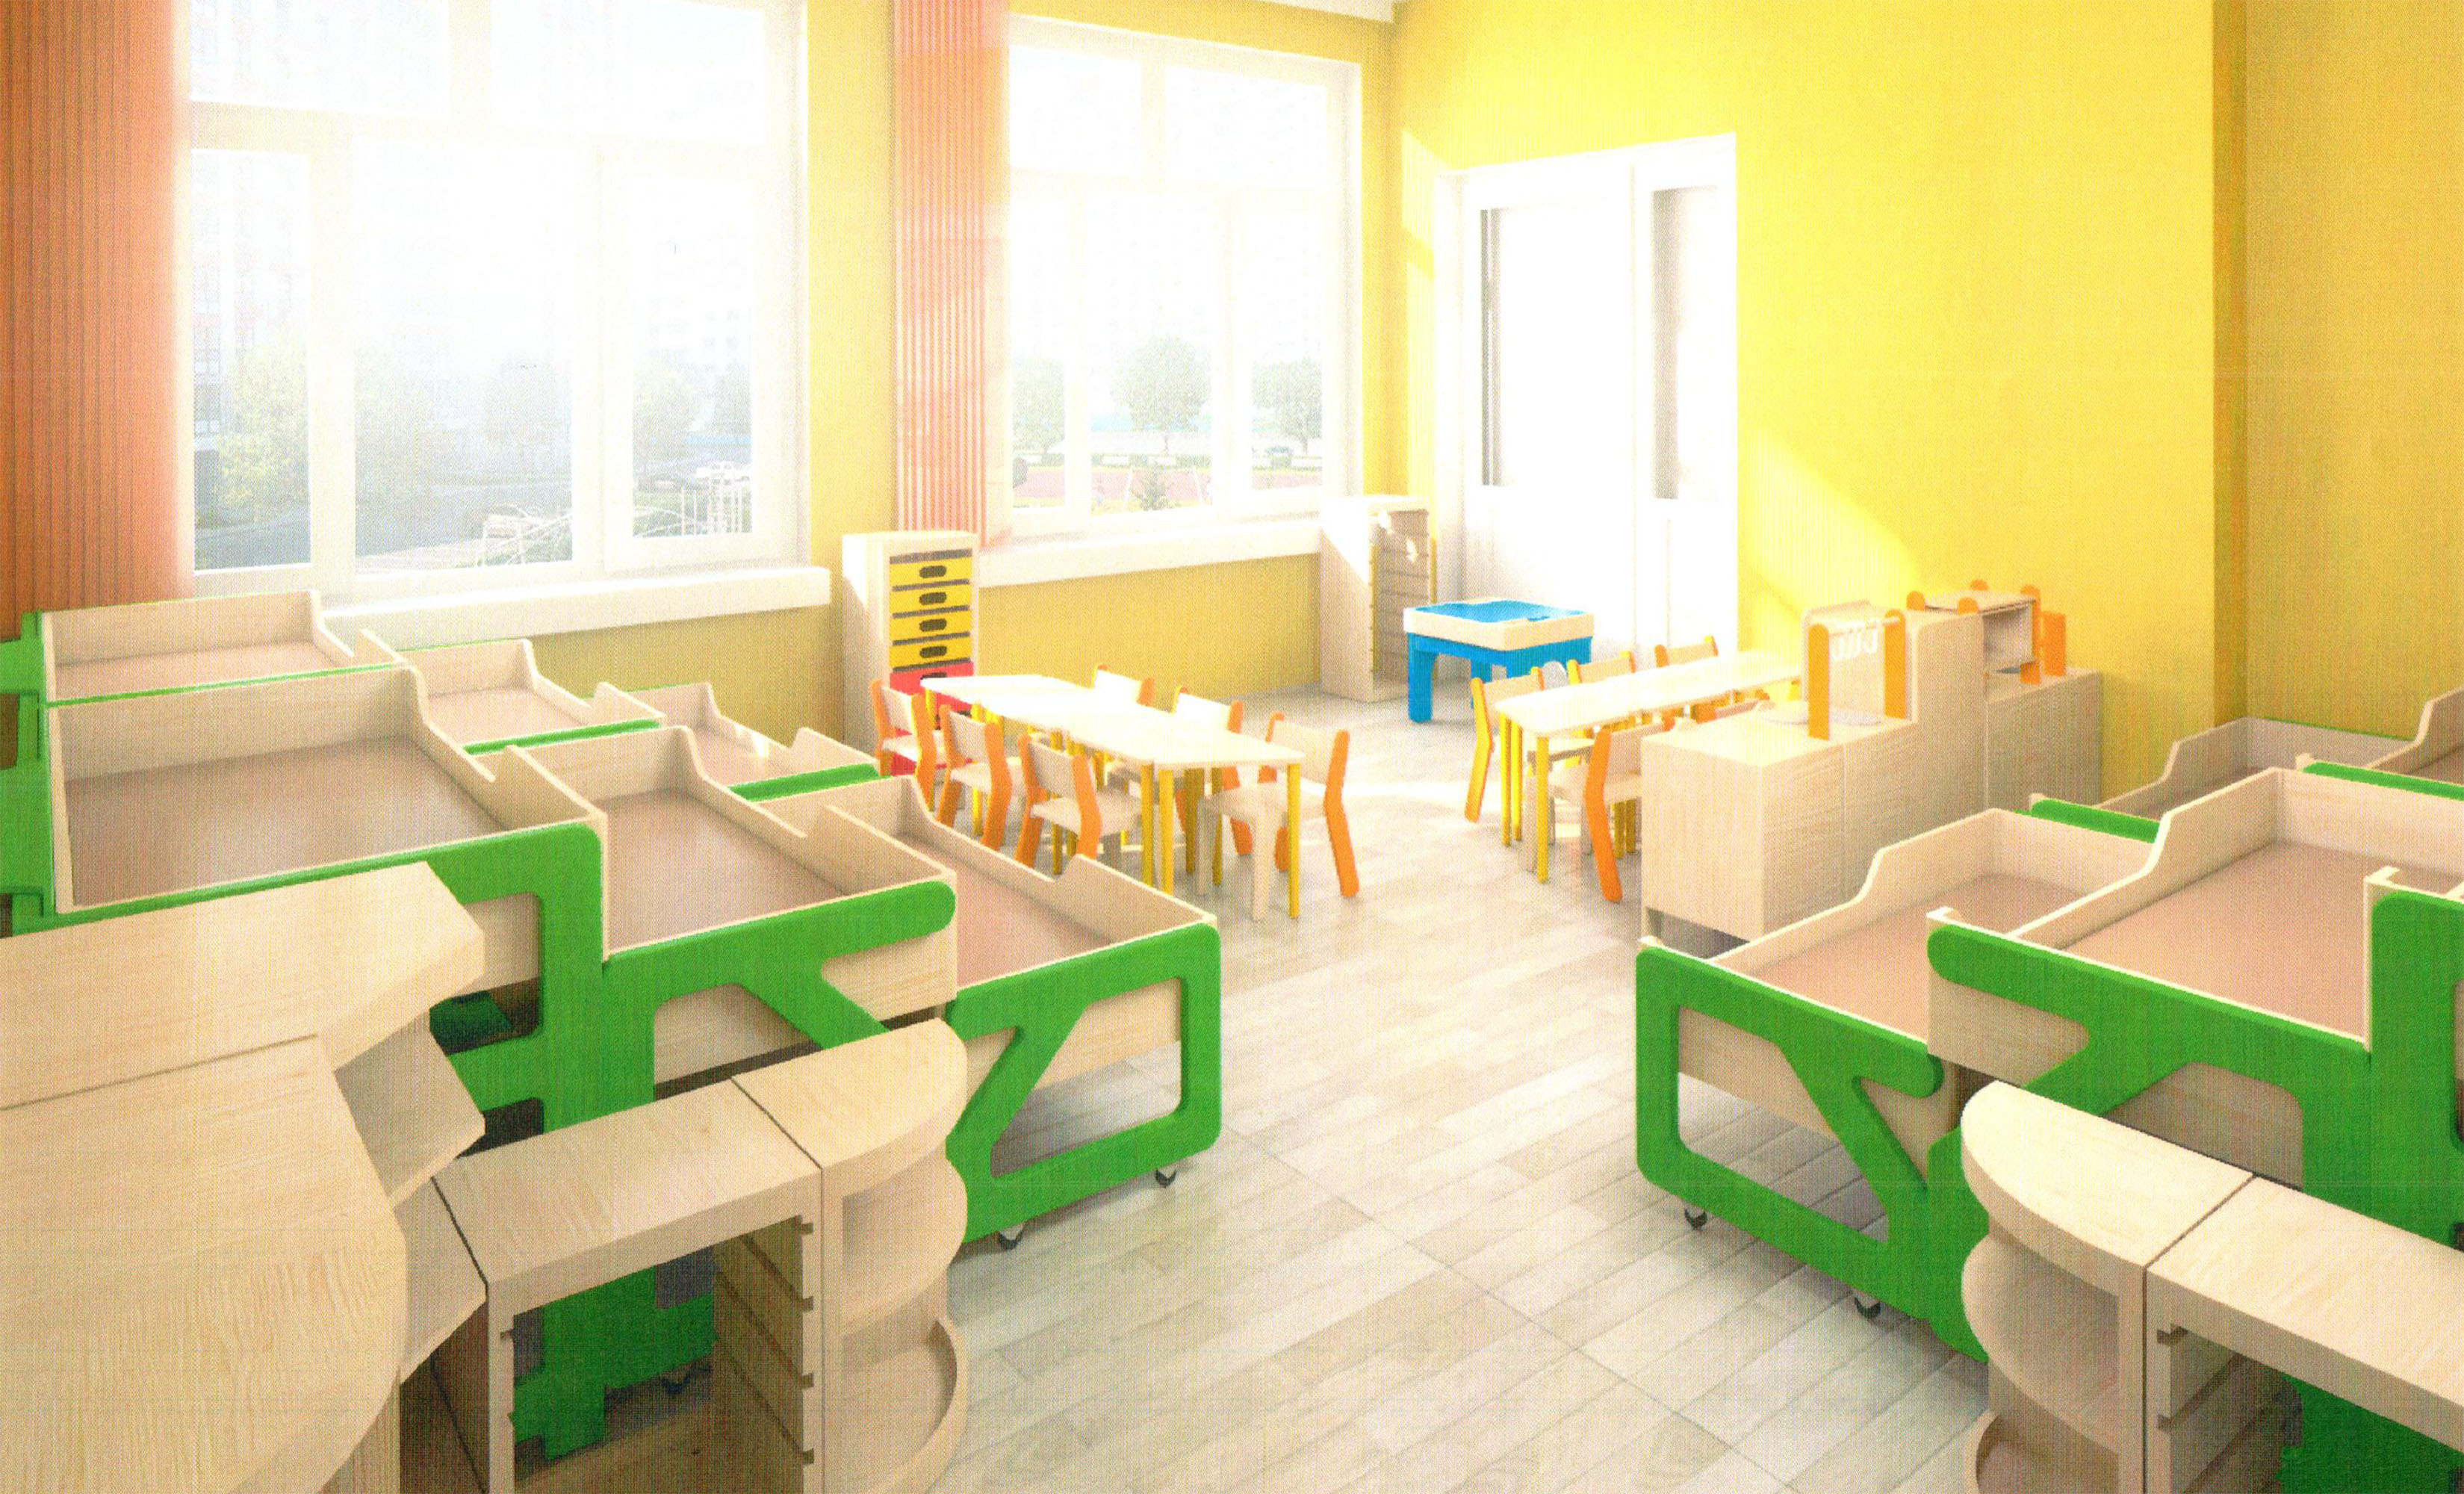 Мебель для детского сада от мебельной фабрики "Элегия"